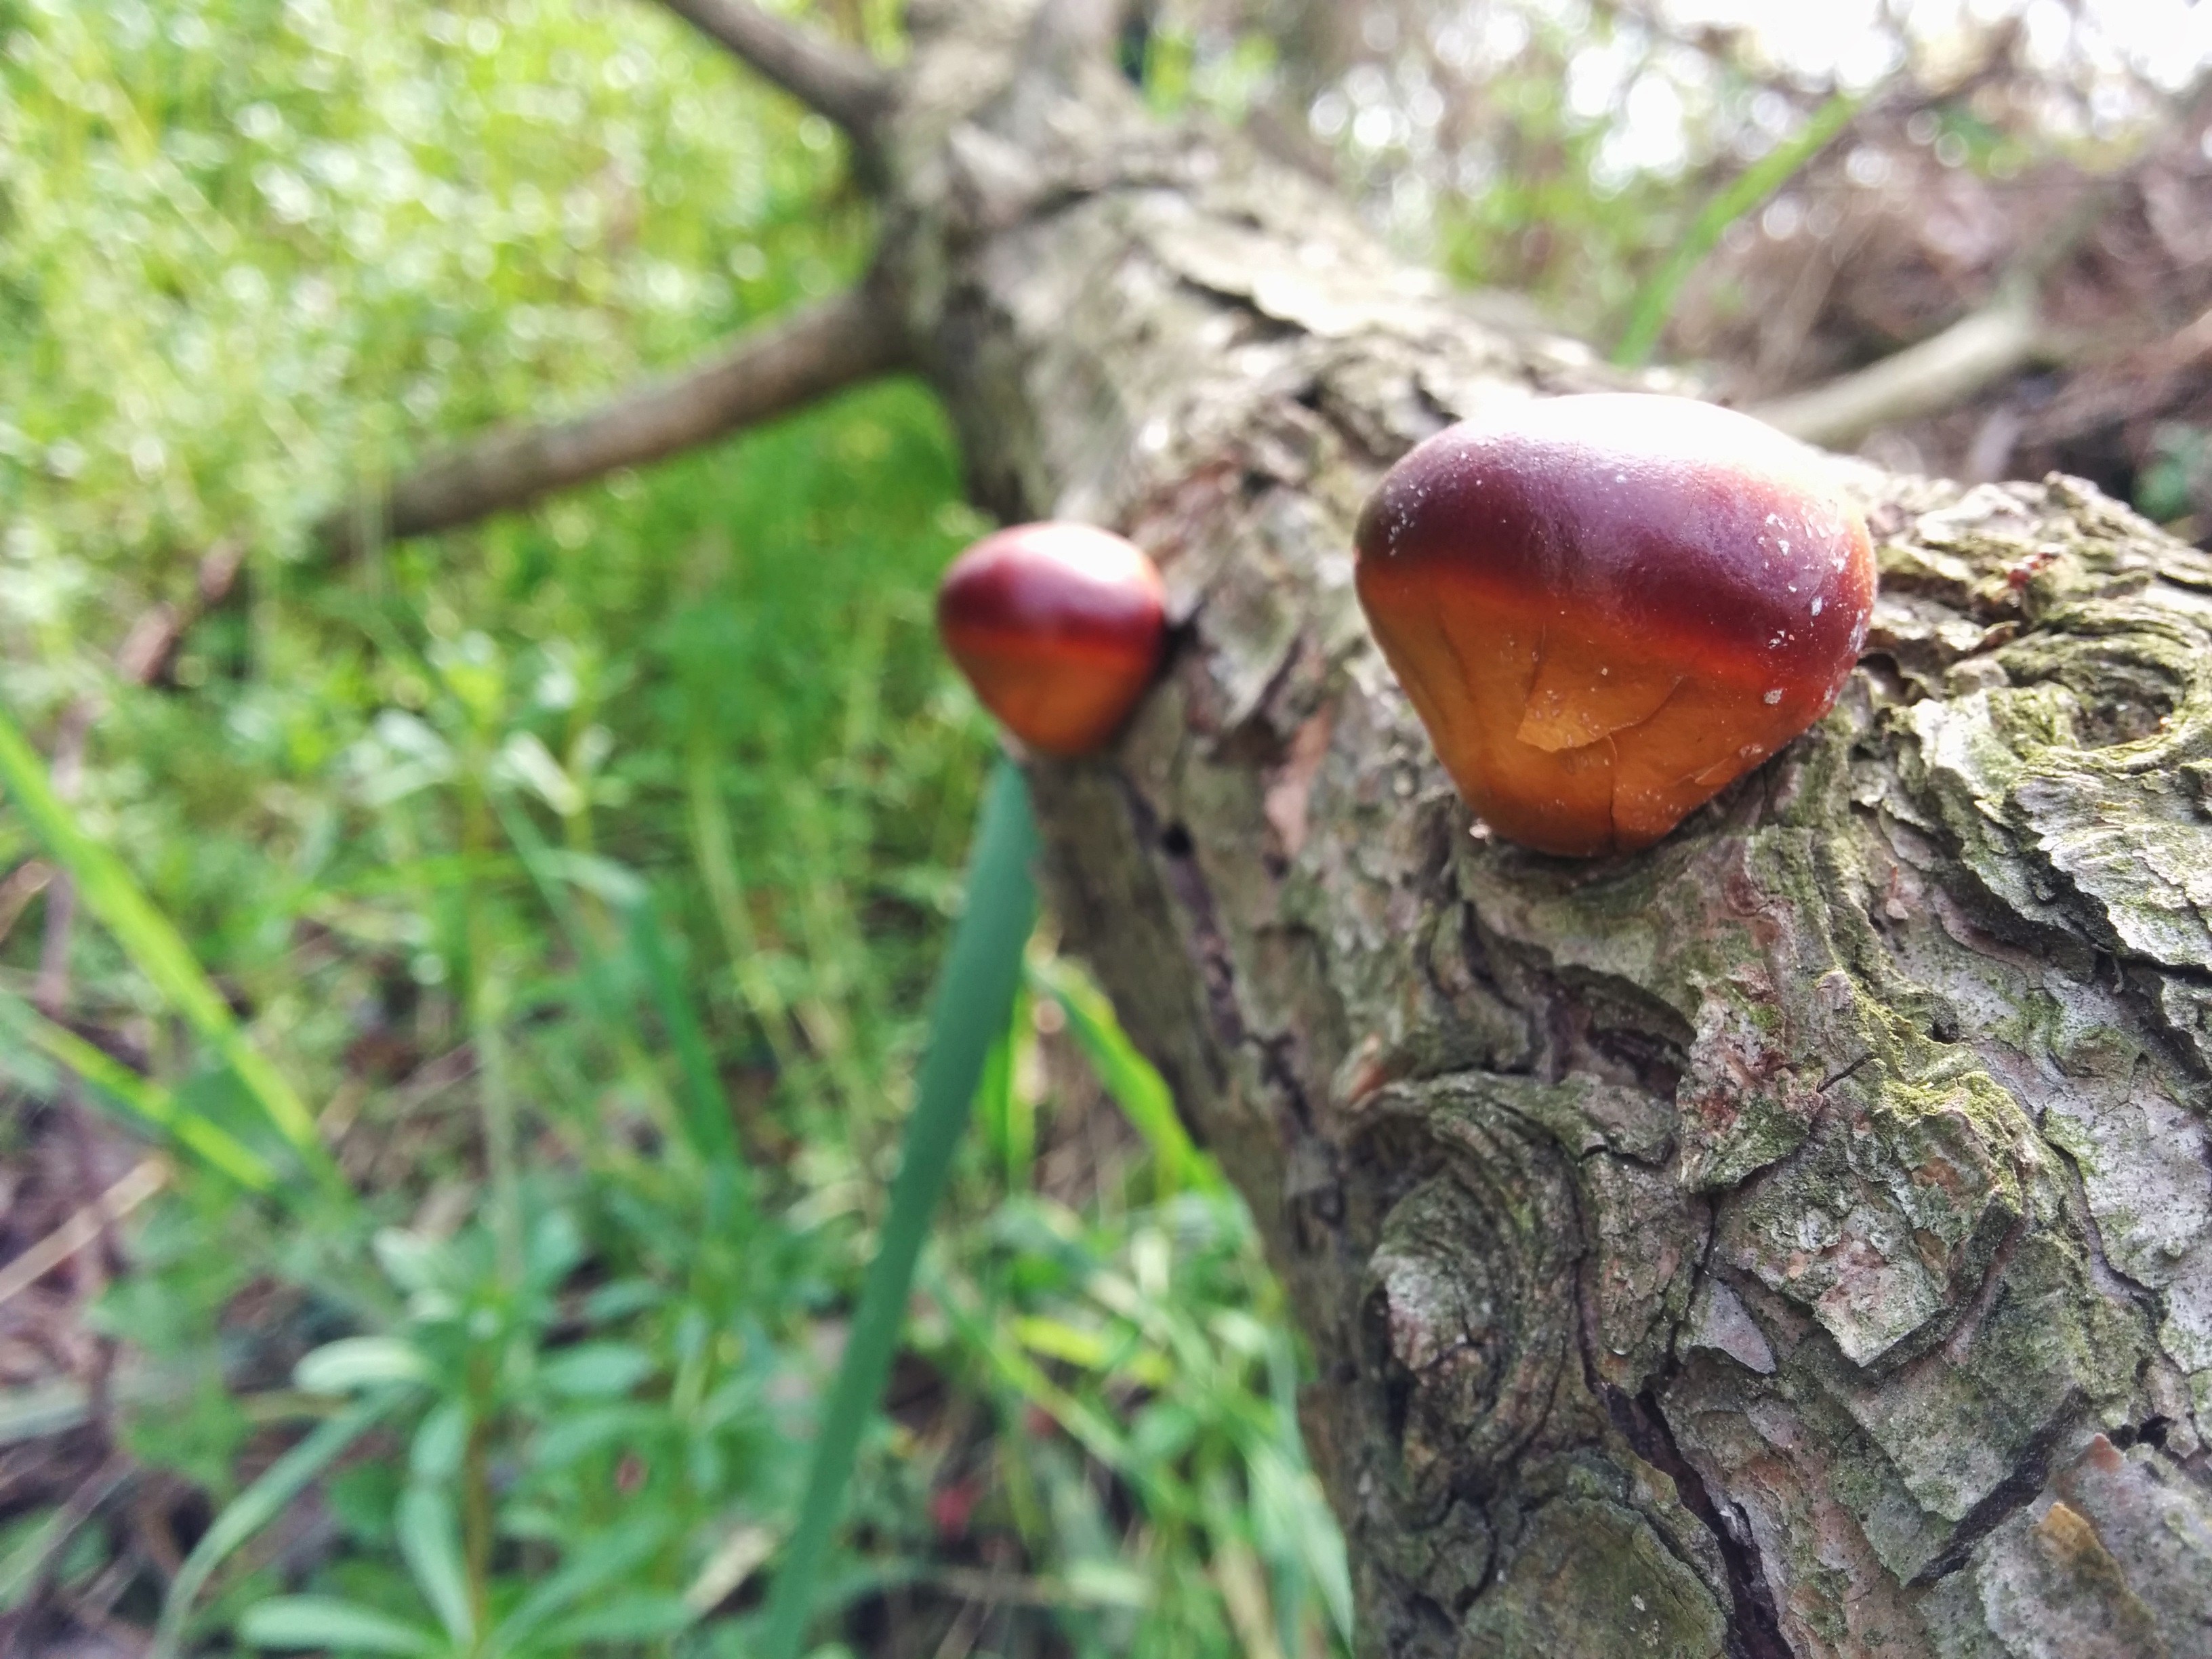 IMG_20150418_143247.jpg 죽은 소나무 줄기에 자란 알밤 닮은 갈색 버섯... 밤톨버섯(한입버섯)